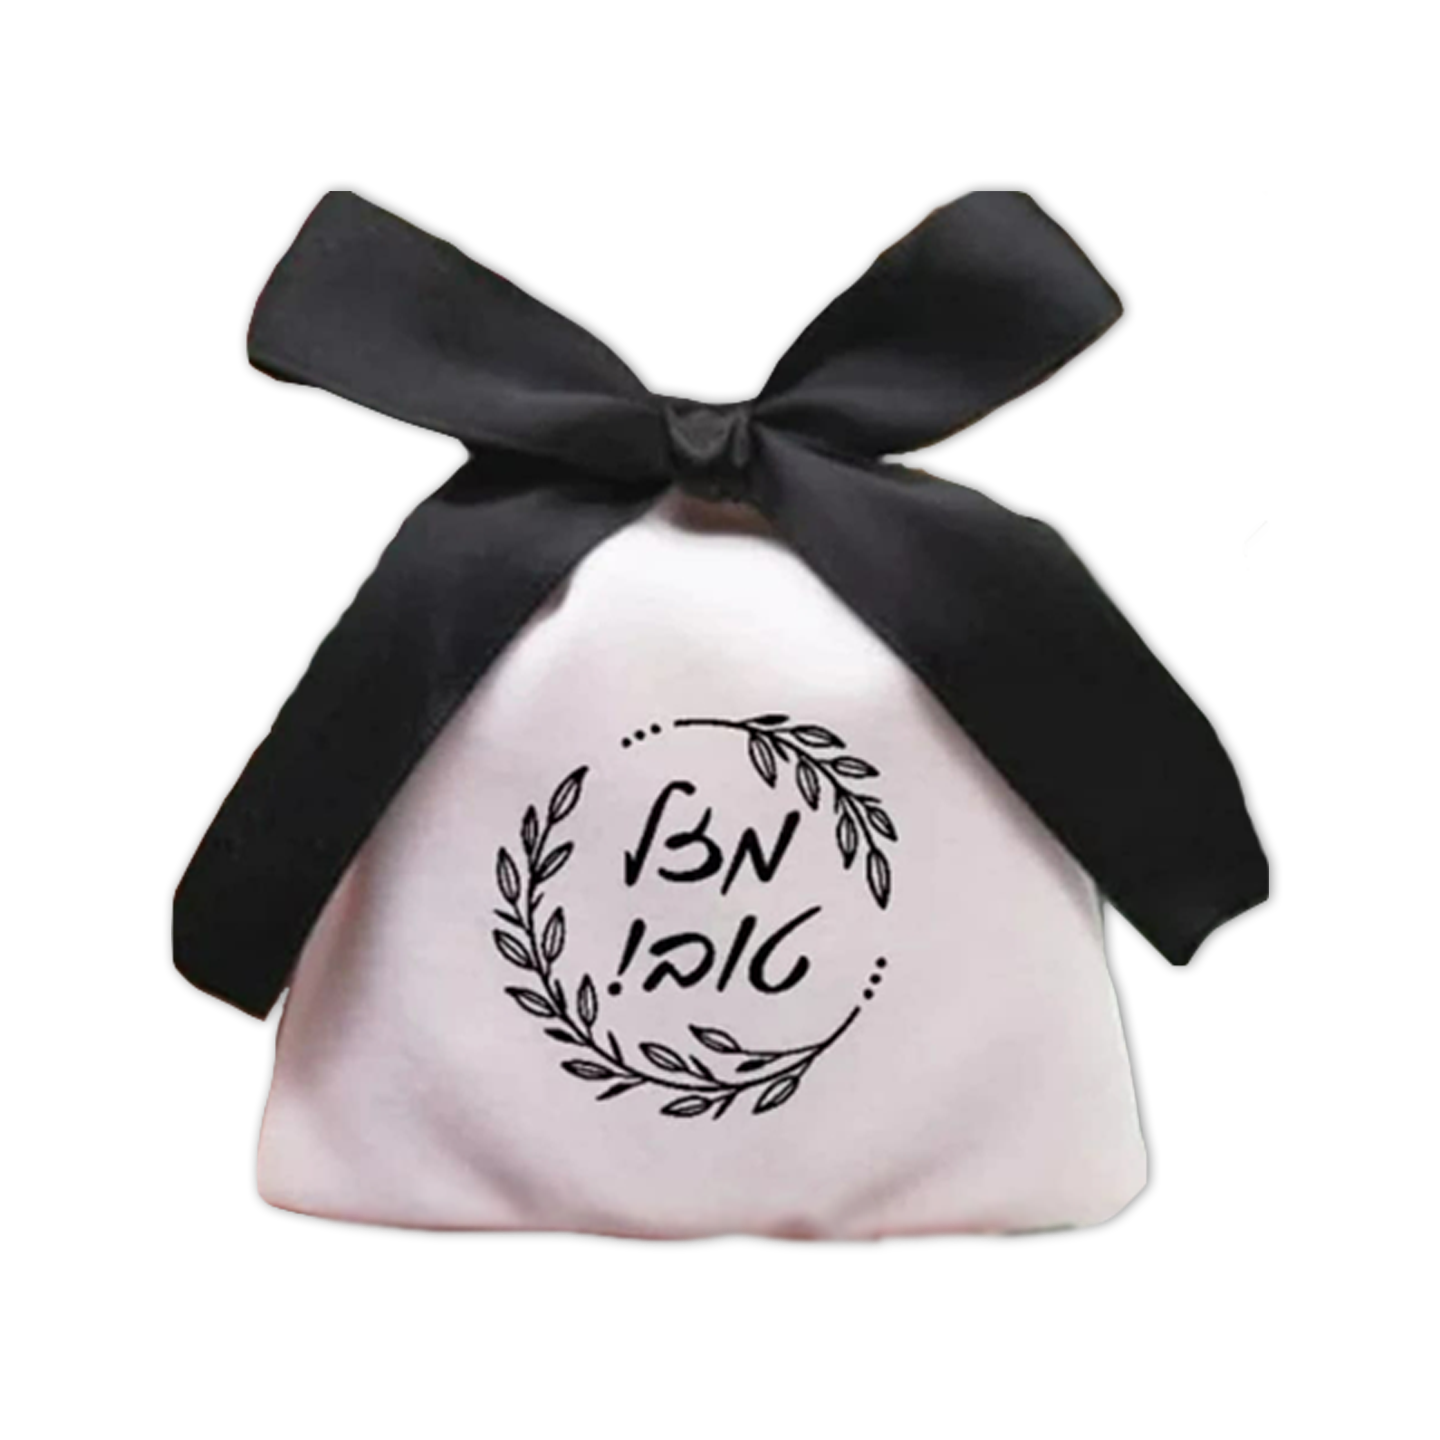 White velvet Bag with wreath mazel tov design, black 4x5